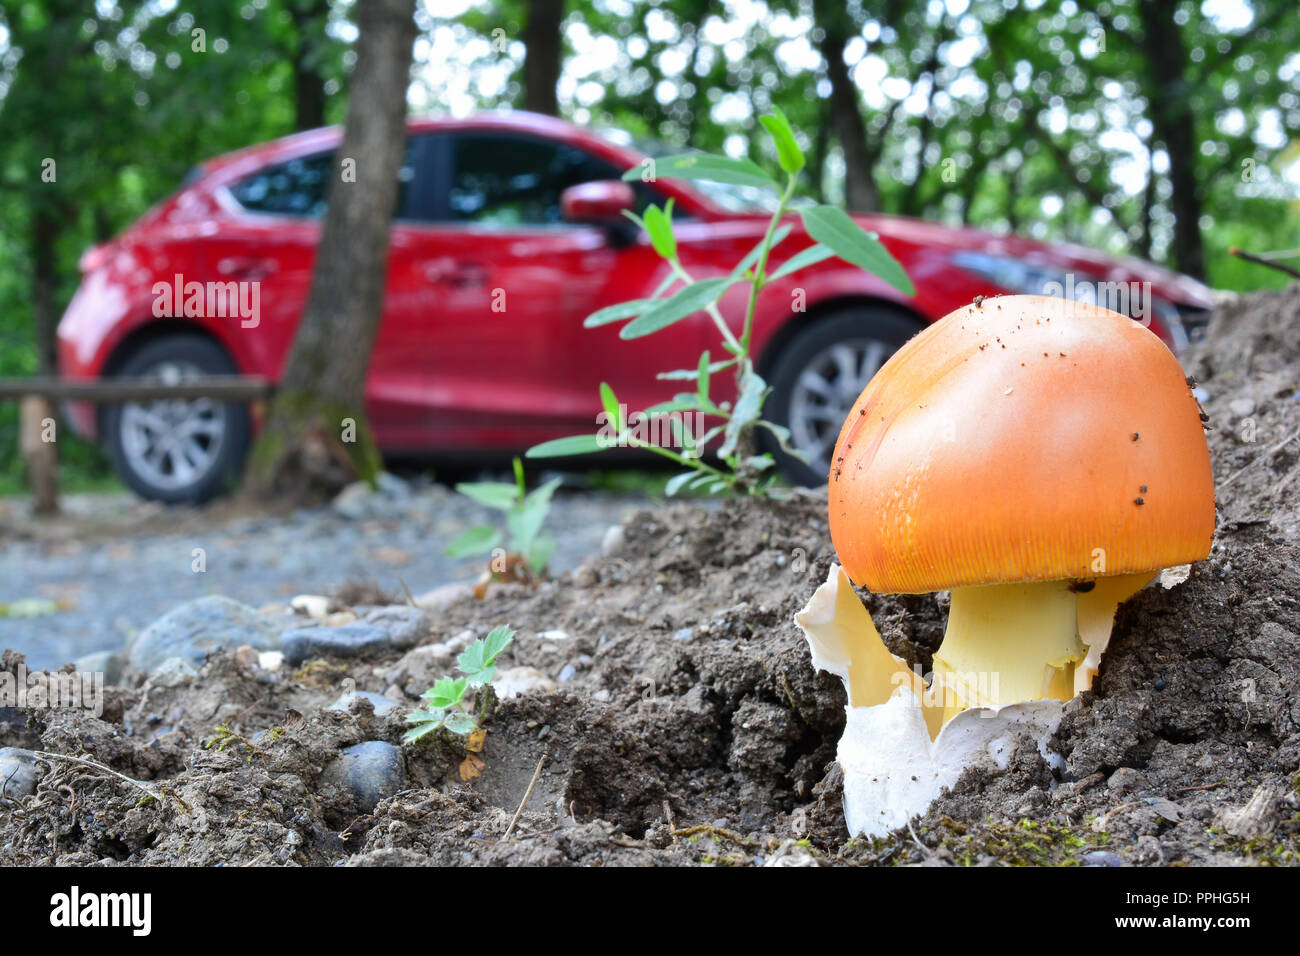 Bonito ejemplar de Amanita cesarea o Caesar's mushroom además country road, setas en primer plano y el coche rojo en segundo plano. Foto de stock